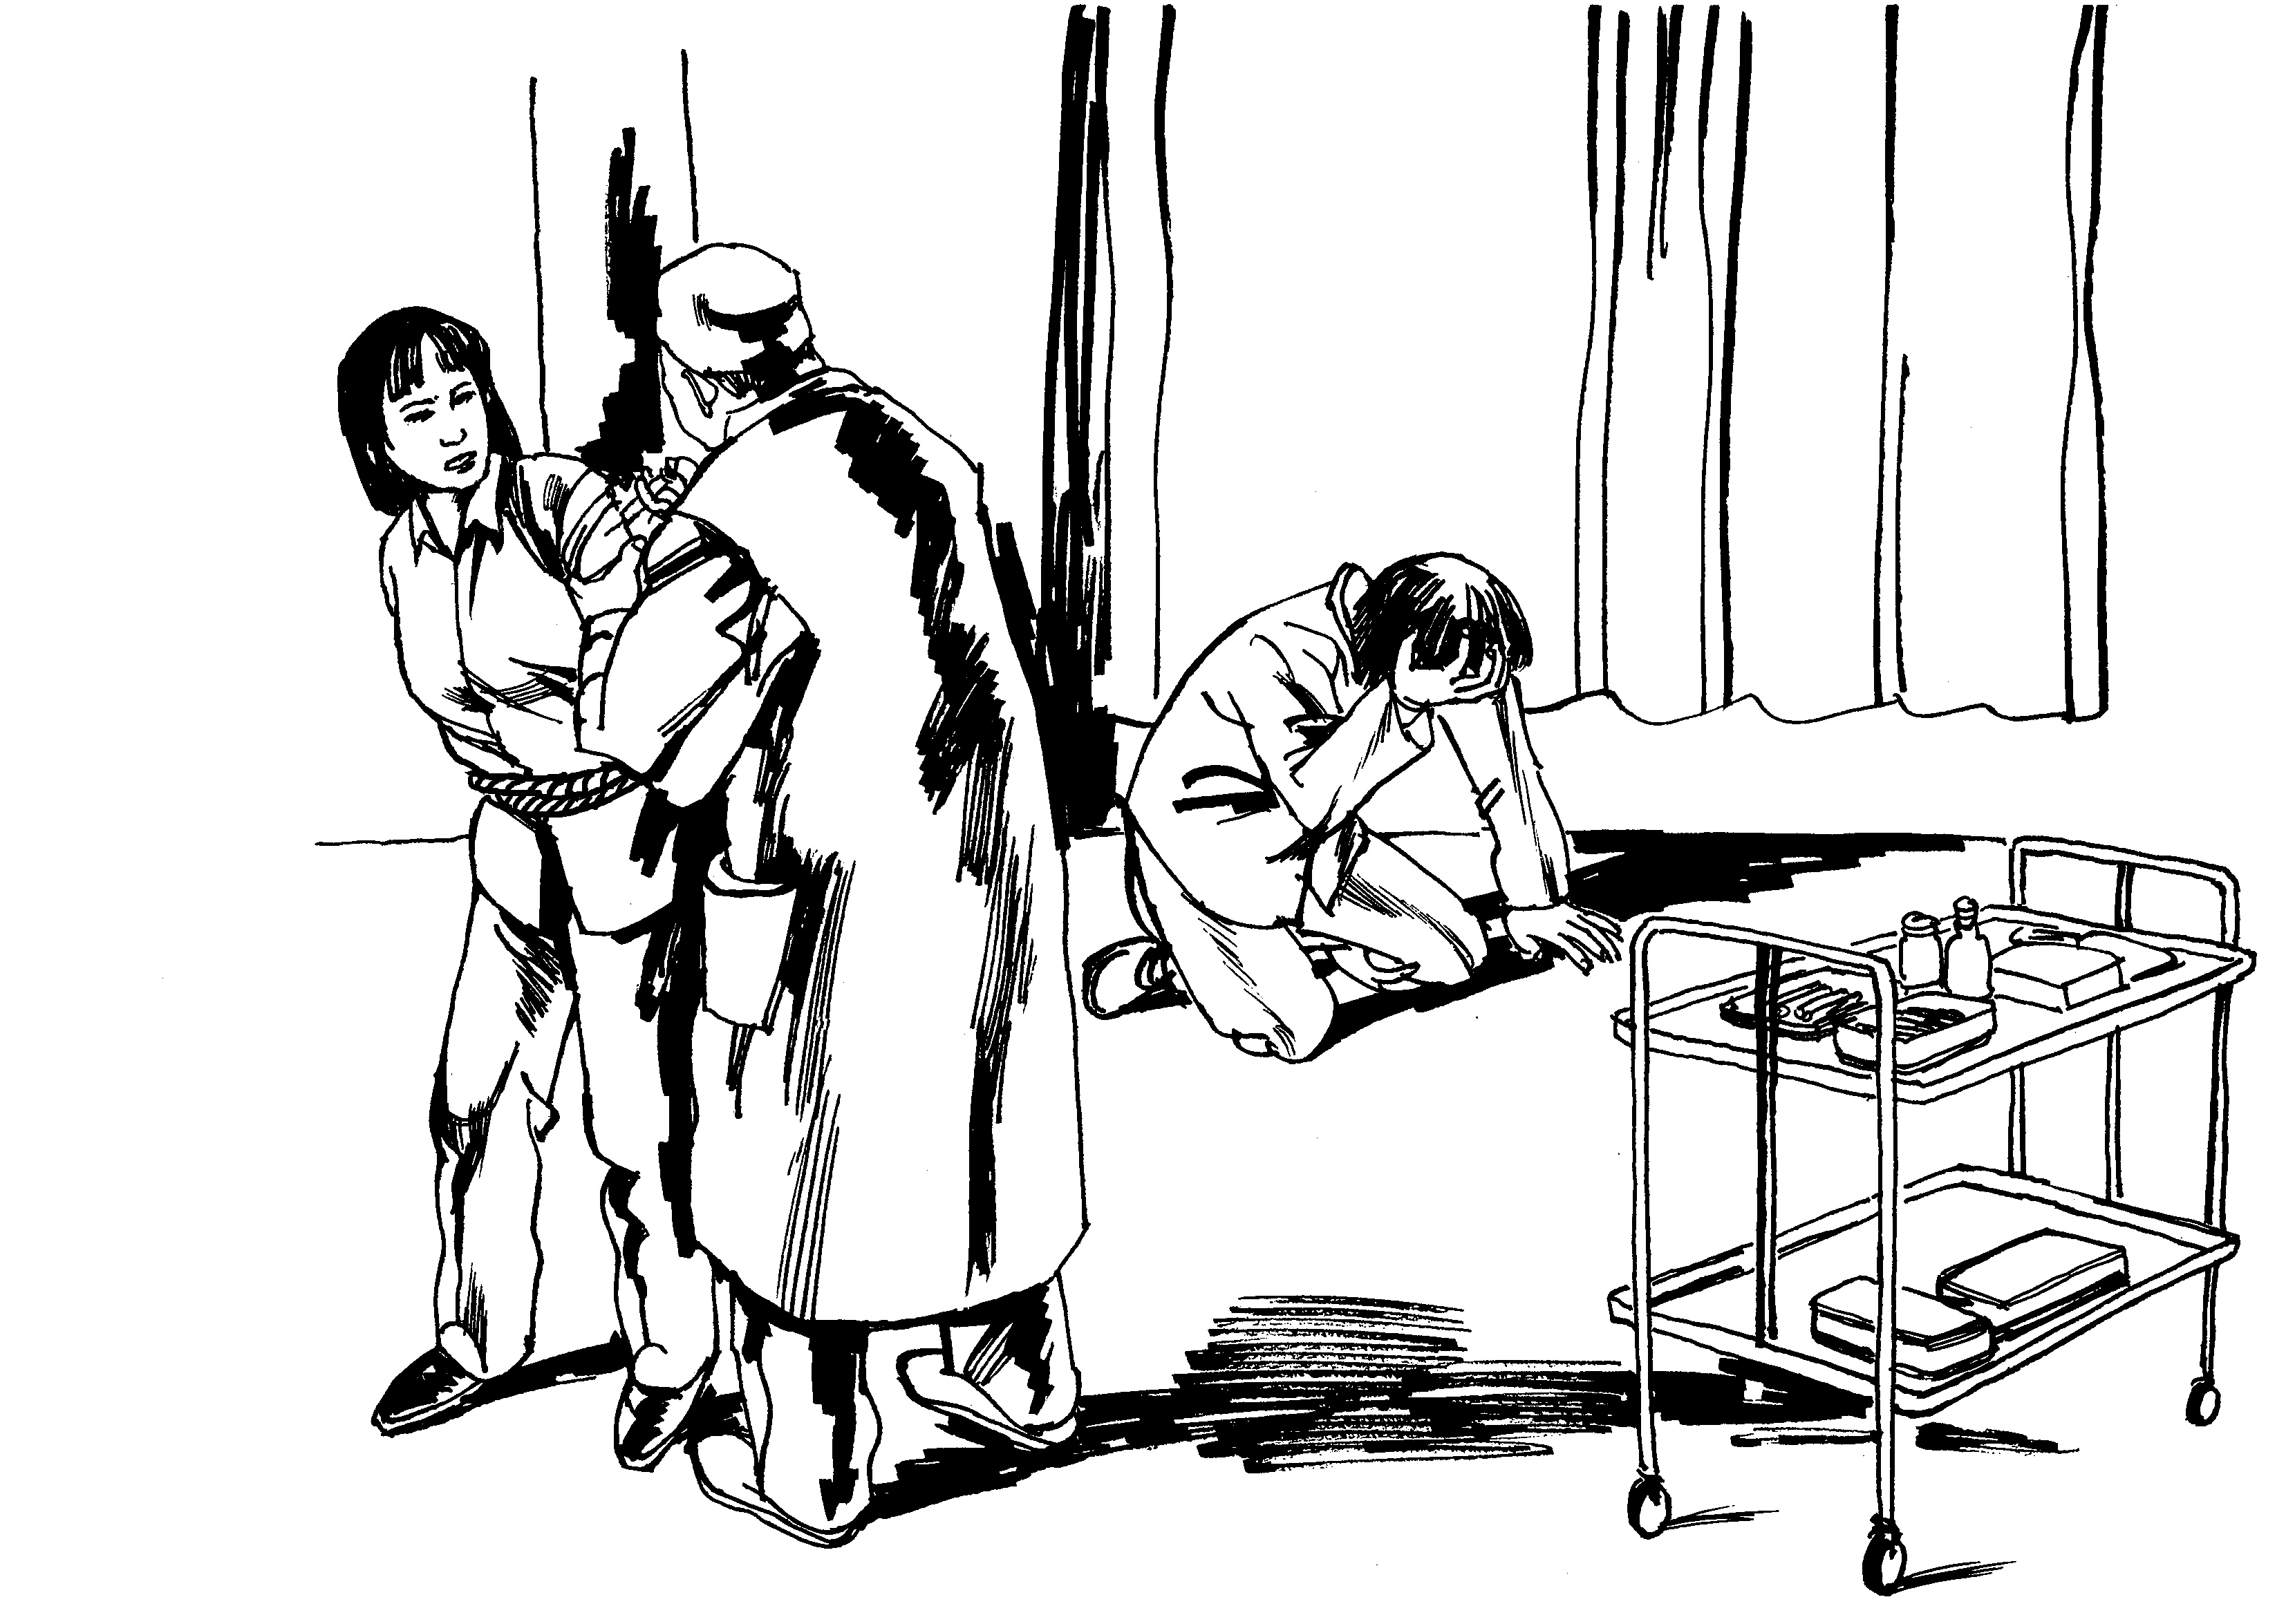 Image for article Une femme du Sichuan arrêtée à répétition et gavée de substances toxiques dans un hôpital psychiatrique